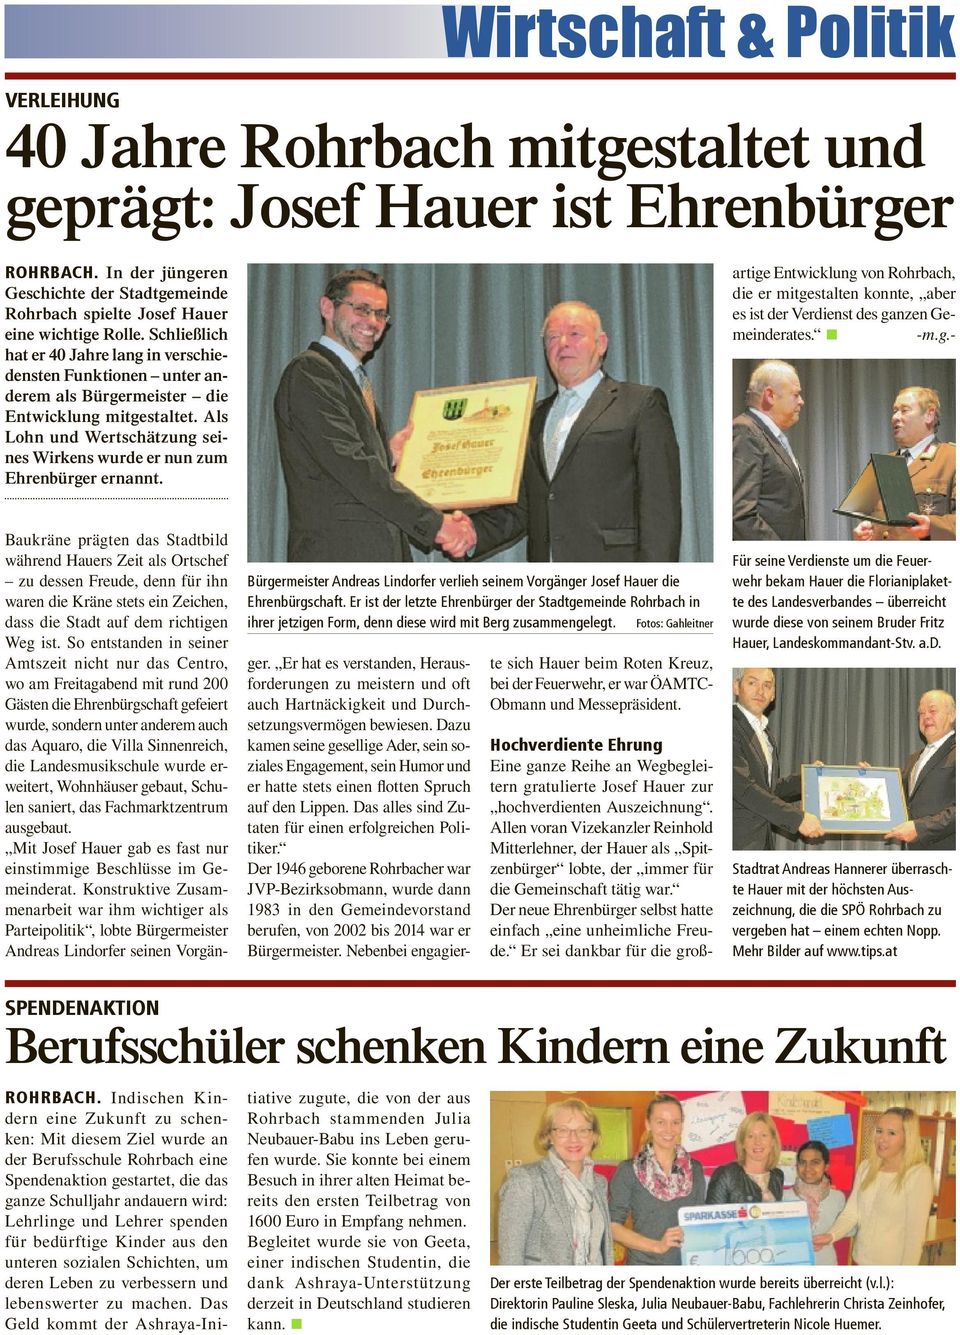 Als Lohn und Wertschätzung seines Wirkens wurde er nun zum Ehrenbürger ernannt. Hochverdiente Ehrung Eine ganze Reihe an Wegbegleitern gratulierte Josef Hauer zur hochverdienten Auszeichnung.